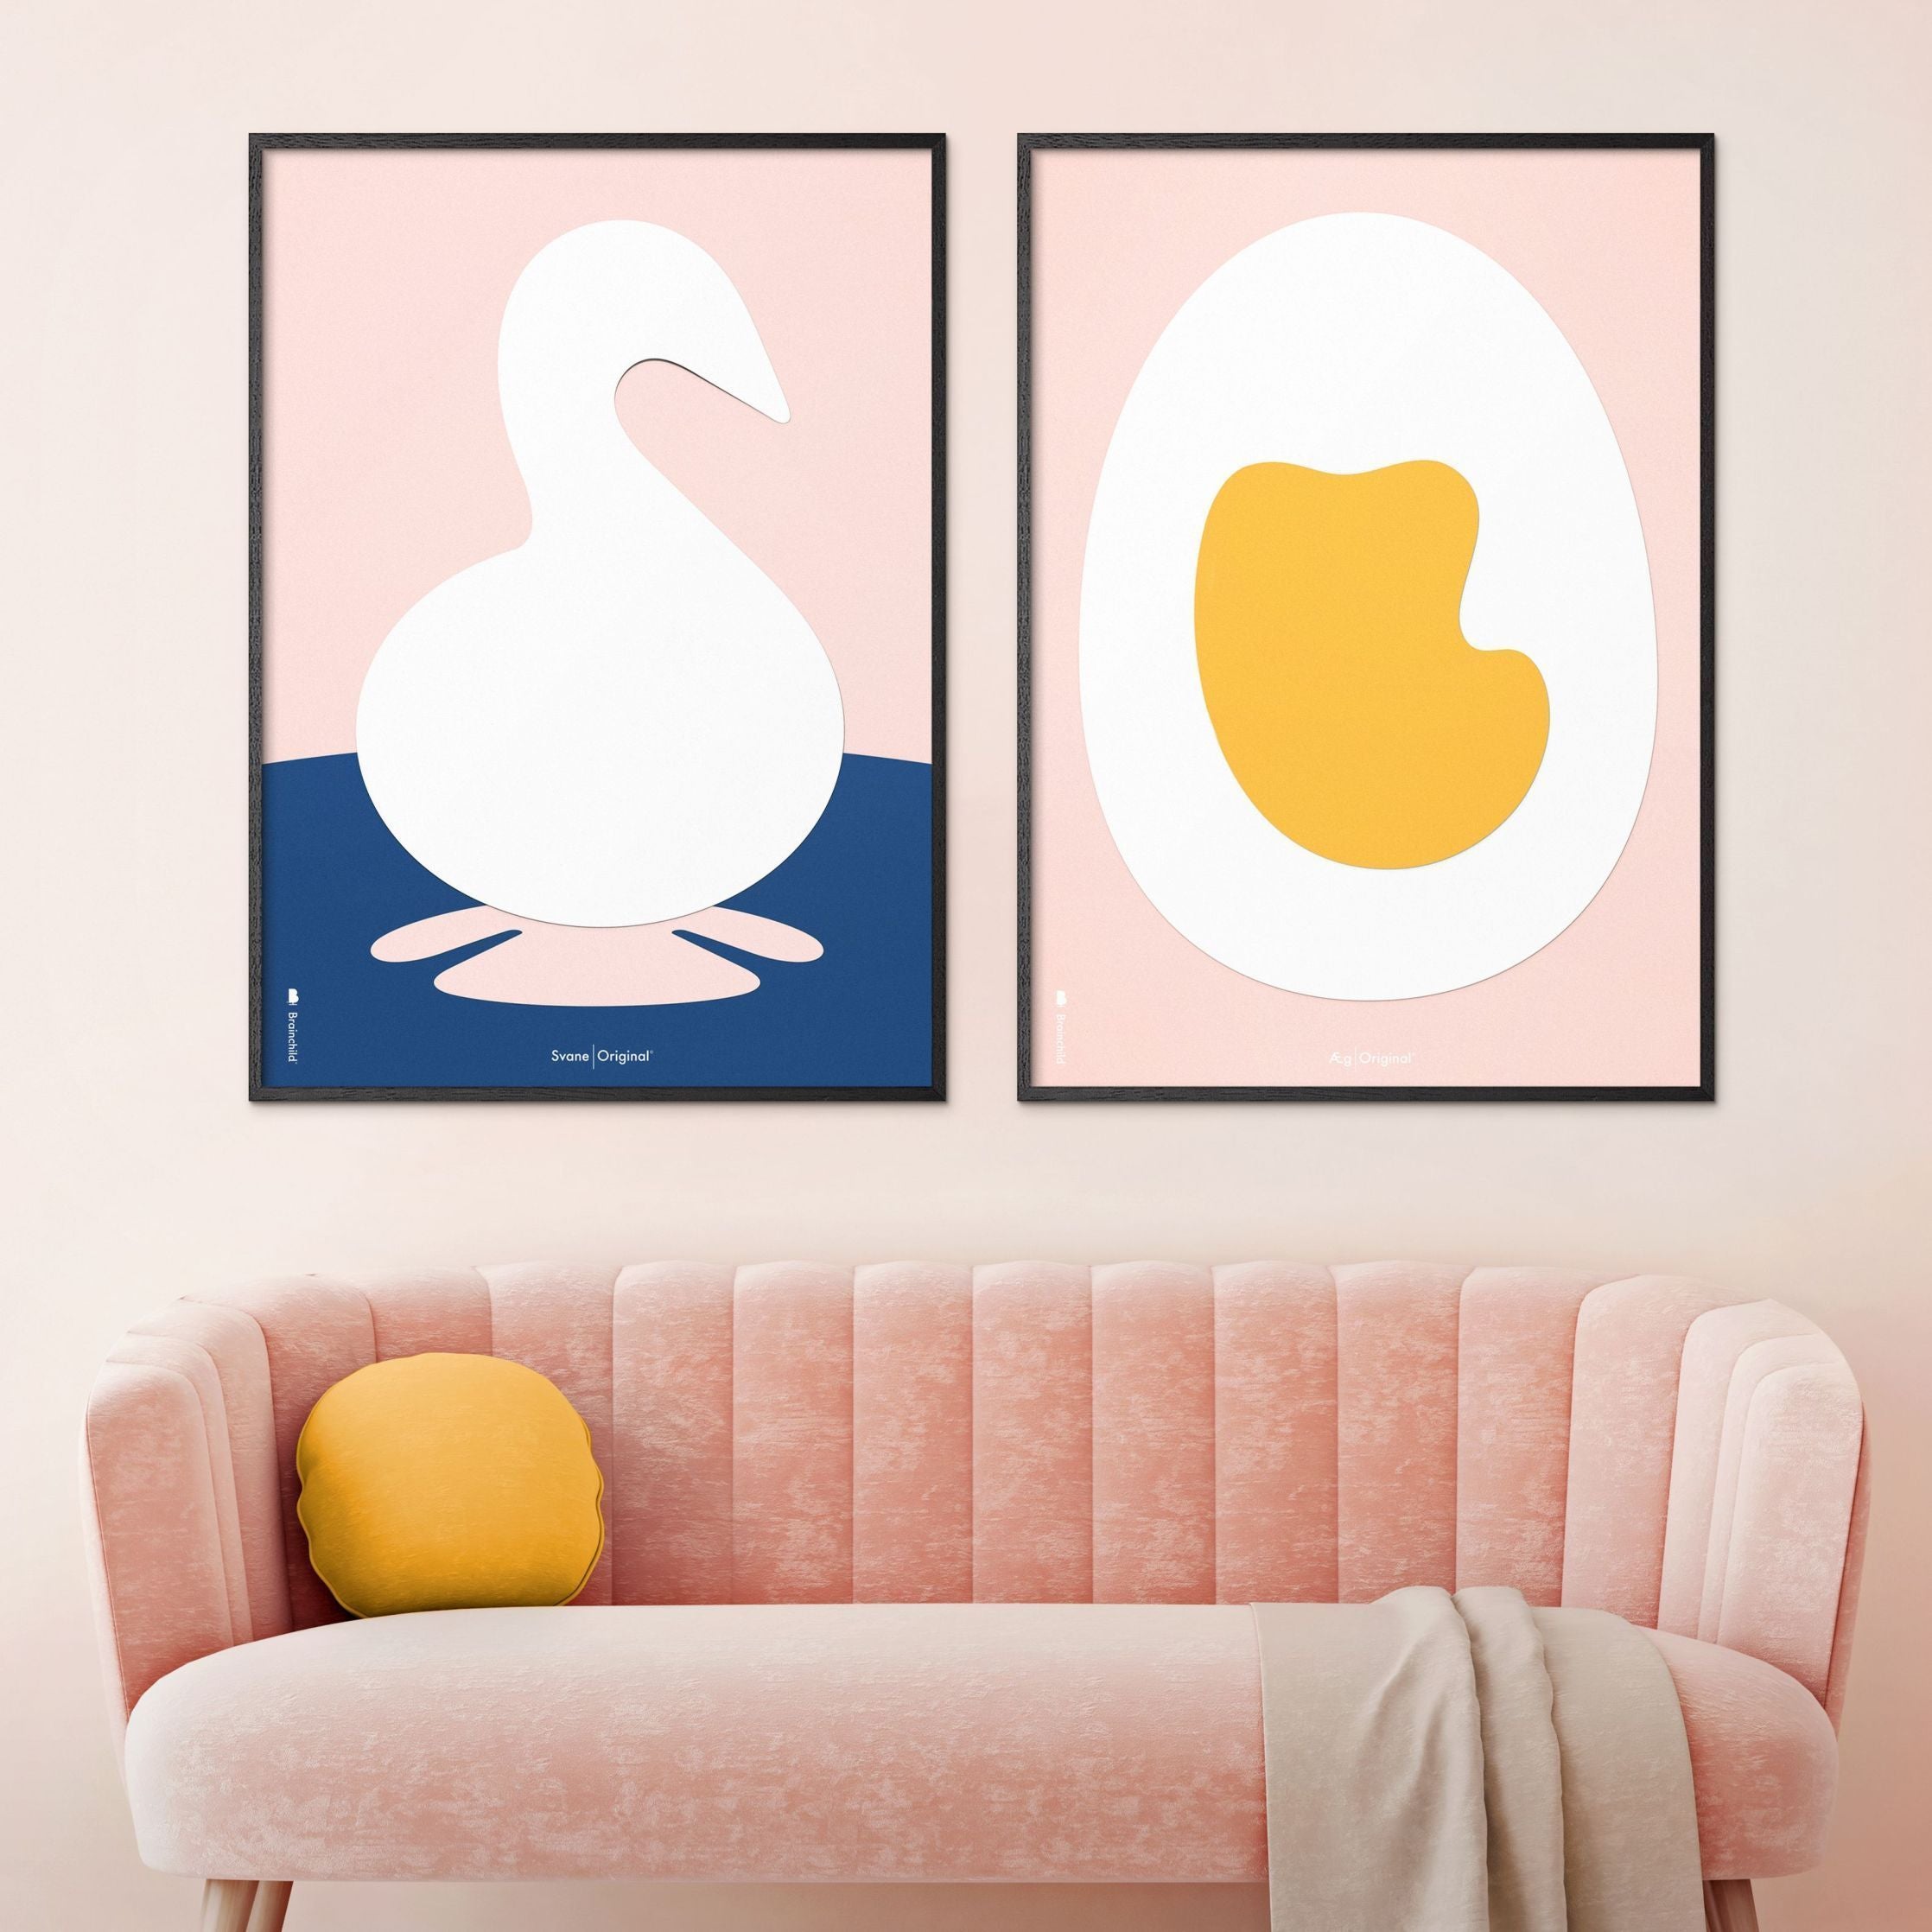 Brainchild Ei Paper Clip Poster zonder frame 50 x70 cm, roze achtergrond